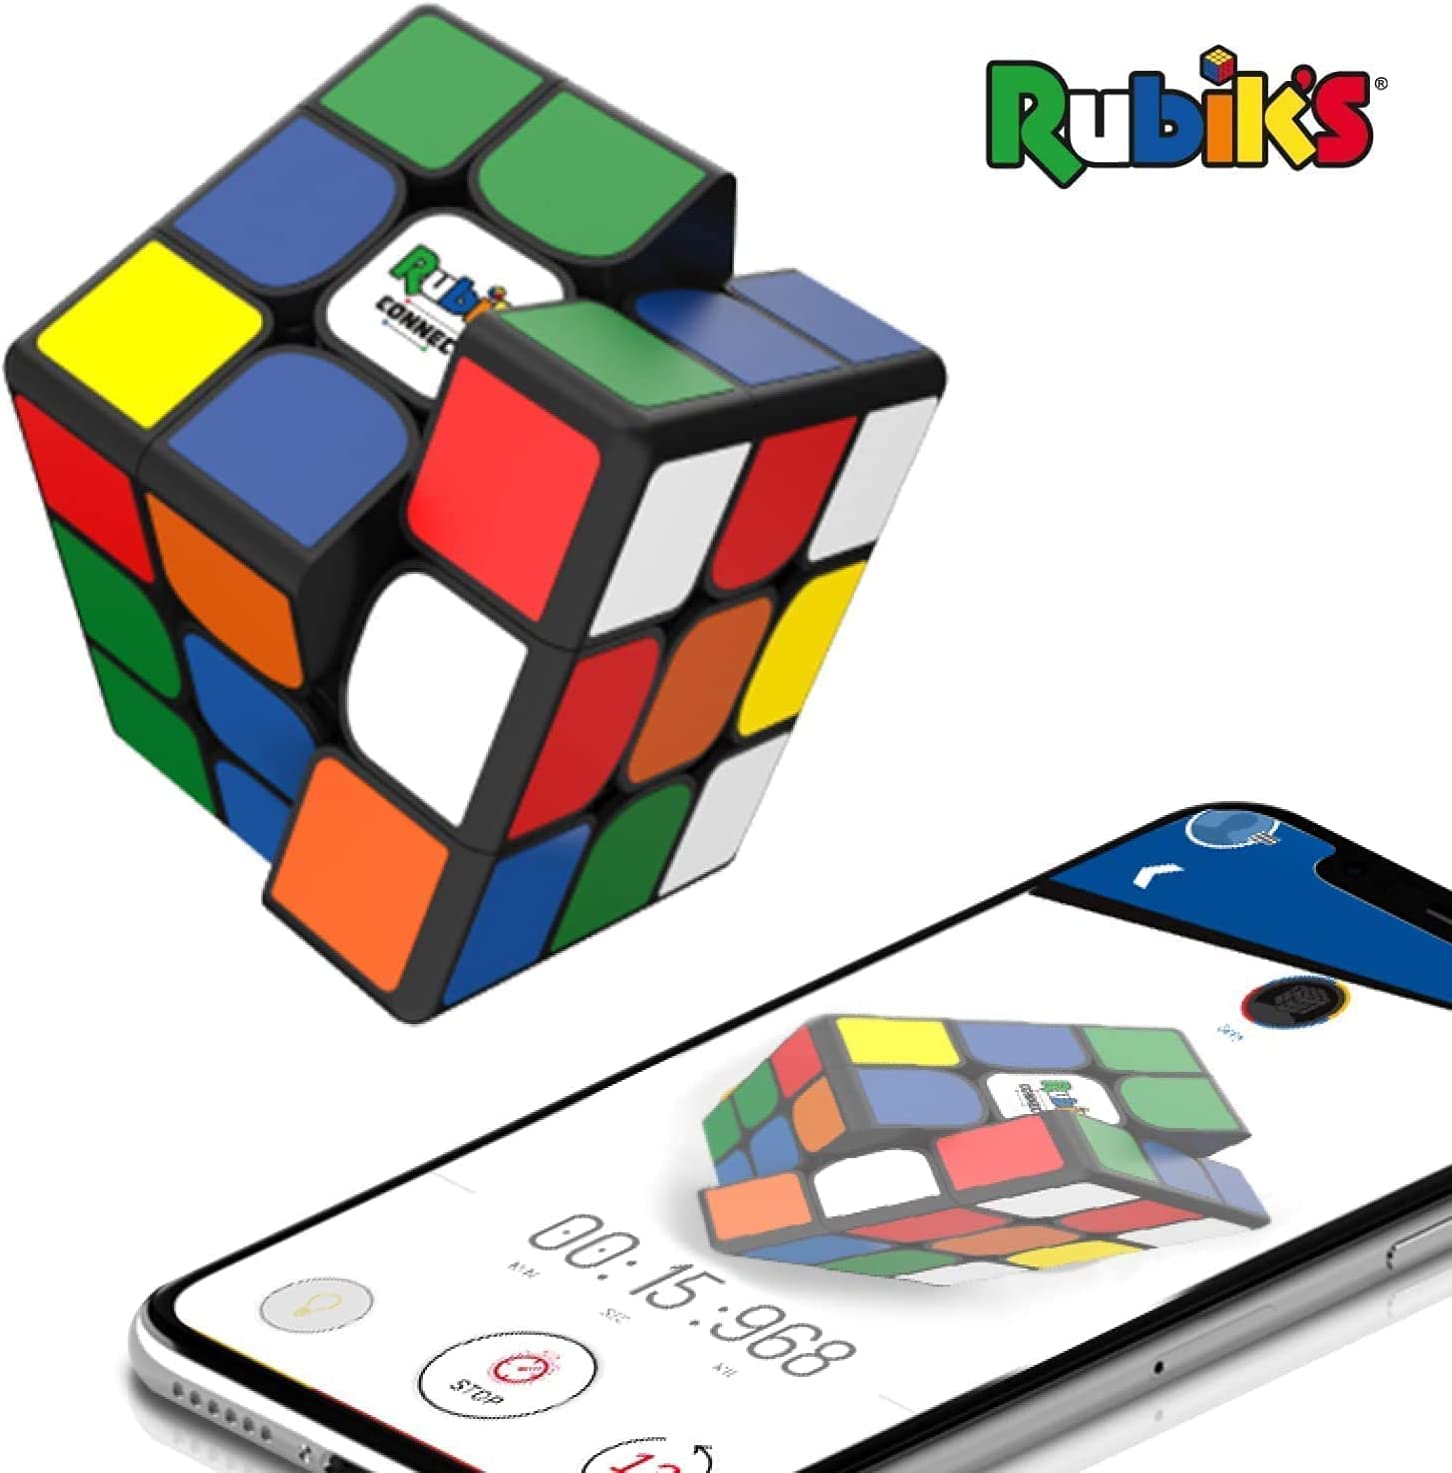 Rubik's Connected: Der voll vernetzte Zauberwürfel (Foto: GoCube)